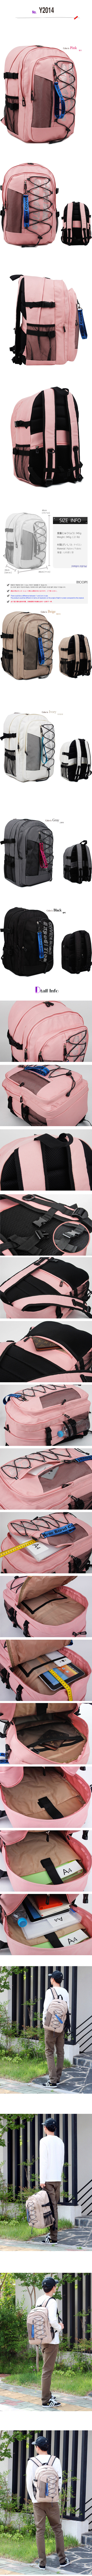 backpackY2014_1.jpg